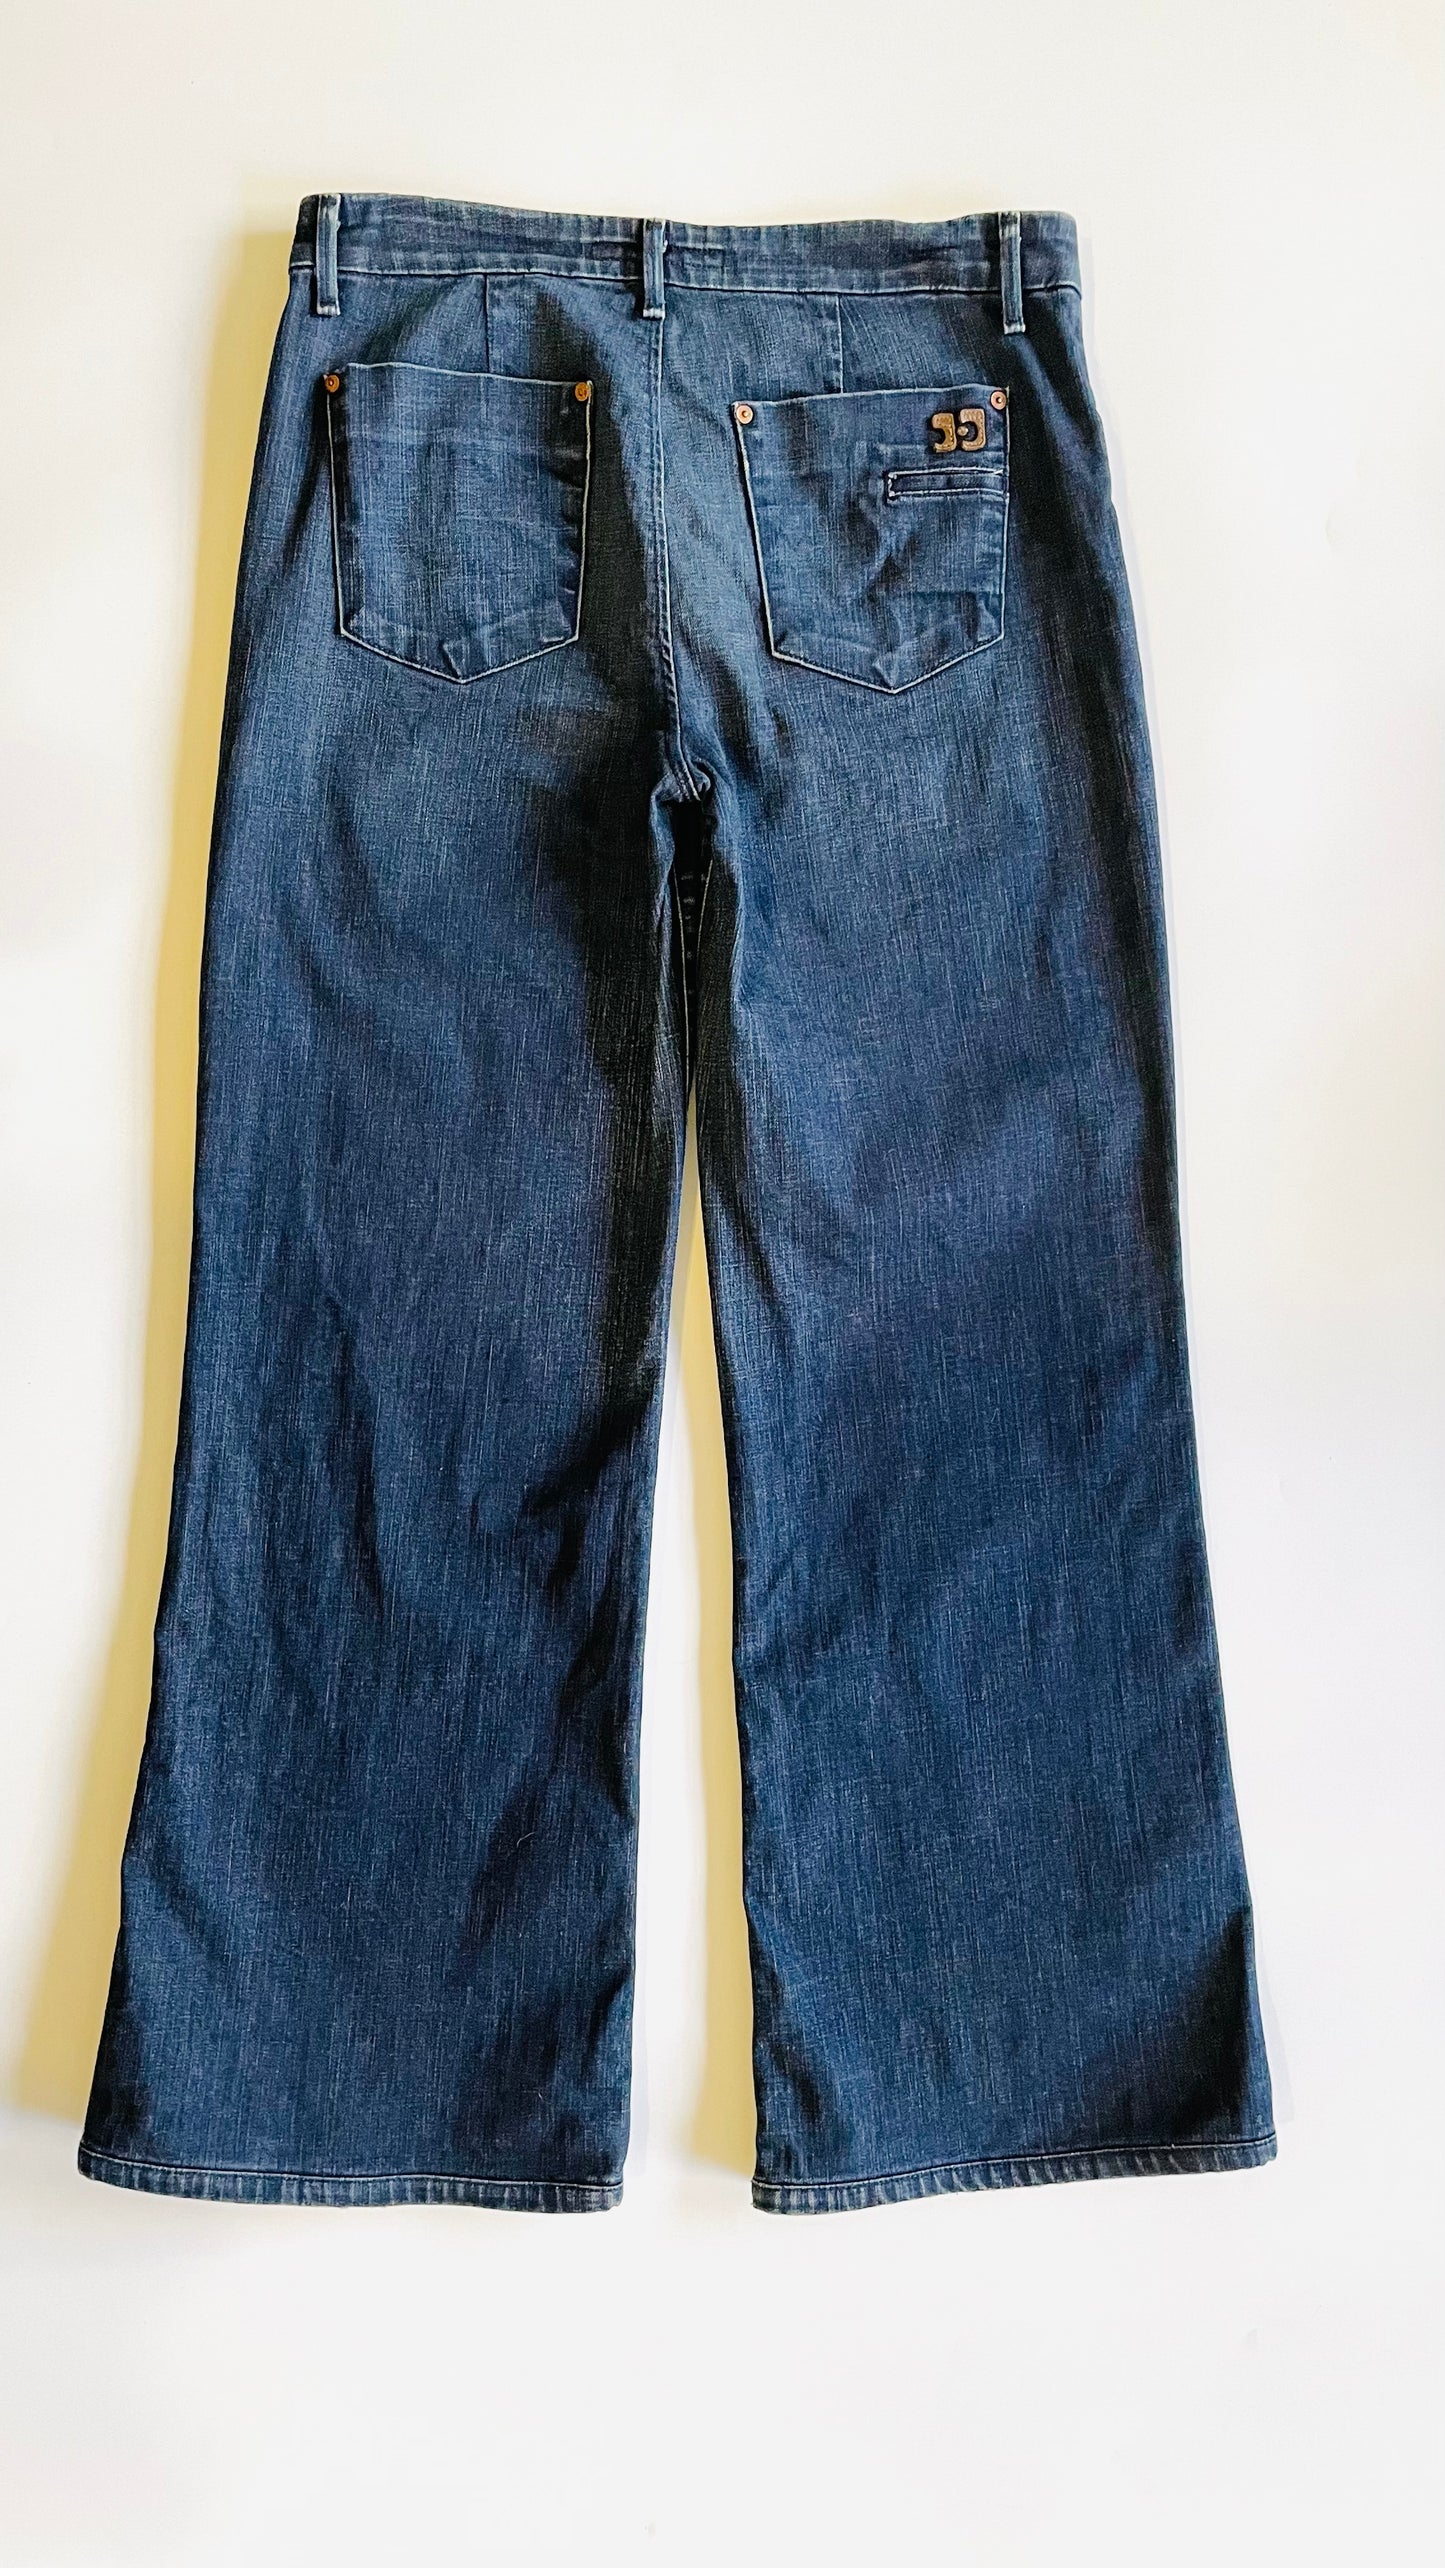 Pre-Loved Joe's Jeans dark blue wide leg jeans - Size 31 x 31